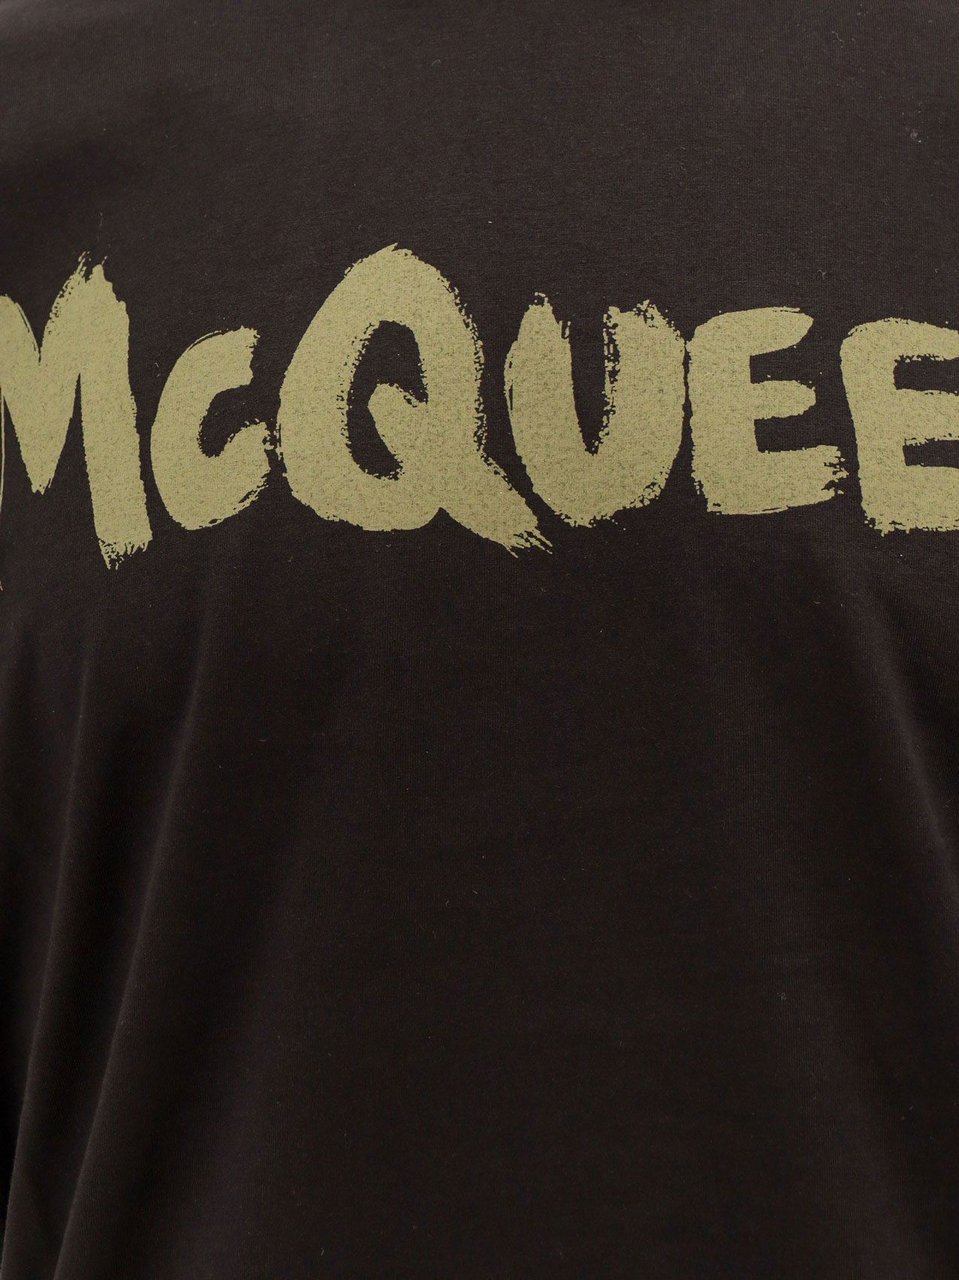 Alexander McQueen McQueen Graffiti organic cotton t-shirt Zwart